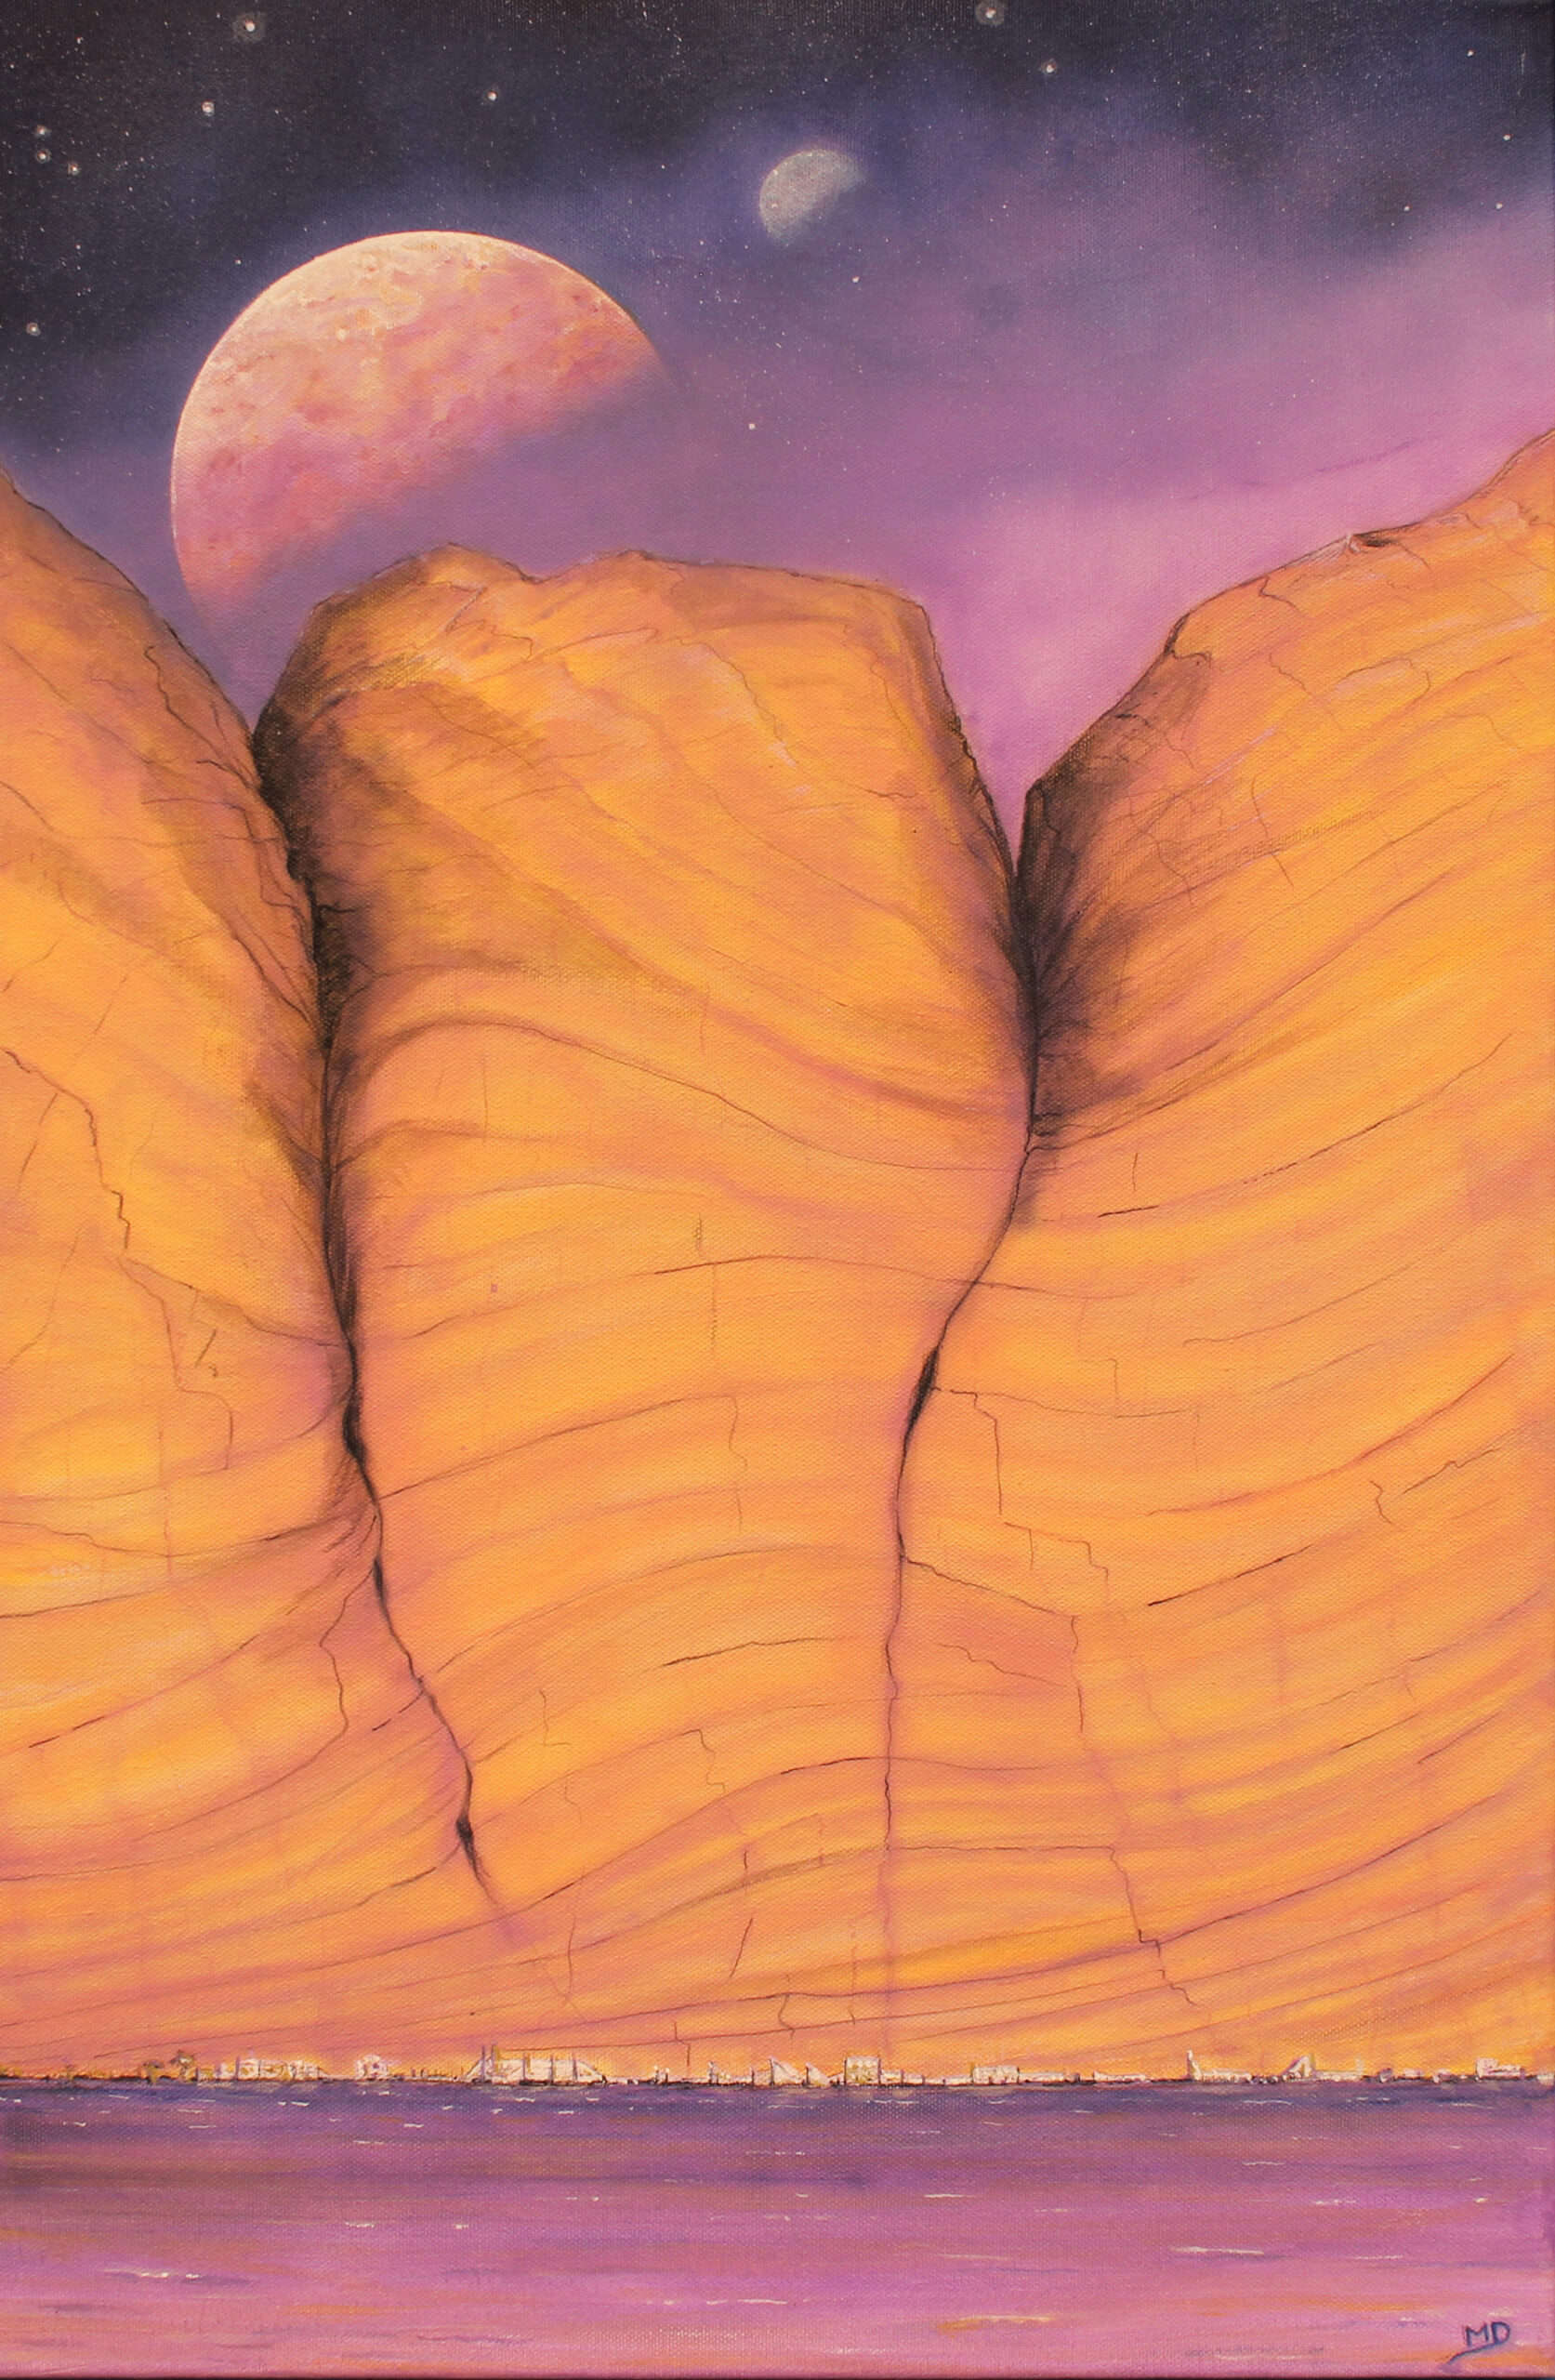 œuvre d'art, science fiction, acrylique sur toile 40/60cm, david morel artiste, falaise orange au bord de l'eau avec une planète et une lune dans le ciel étoilée